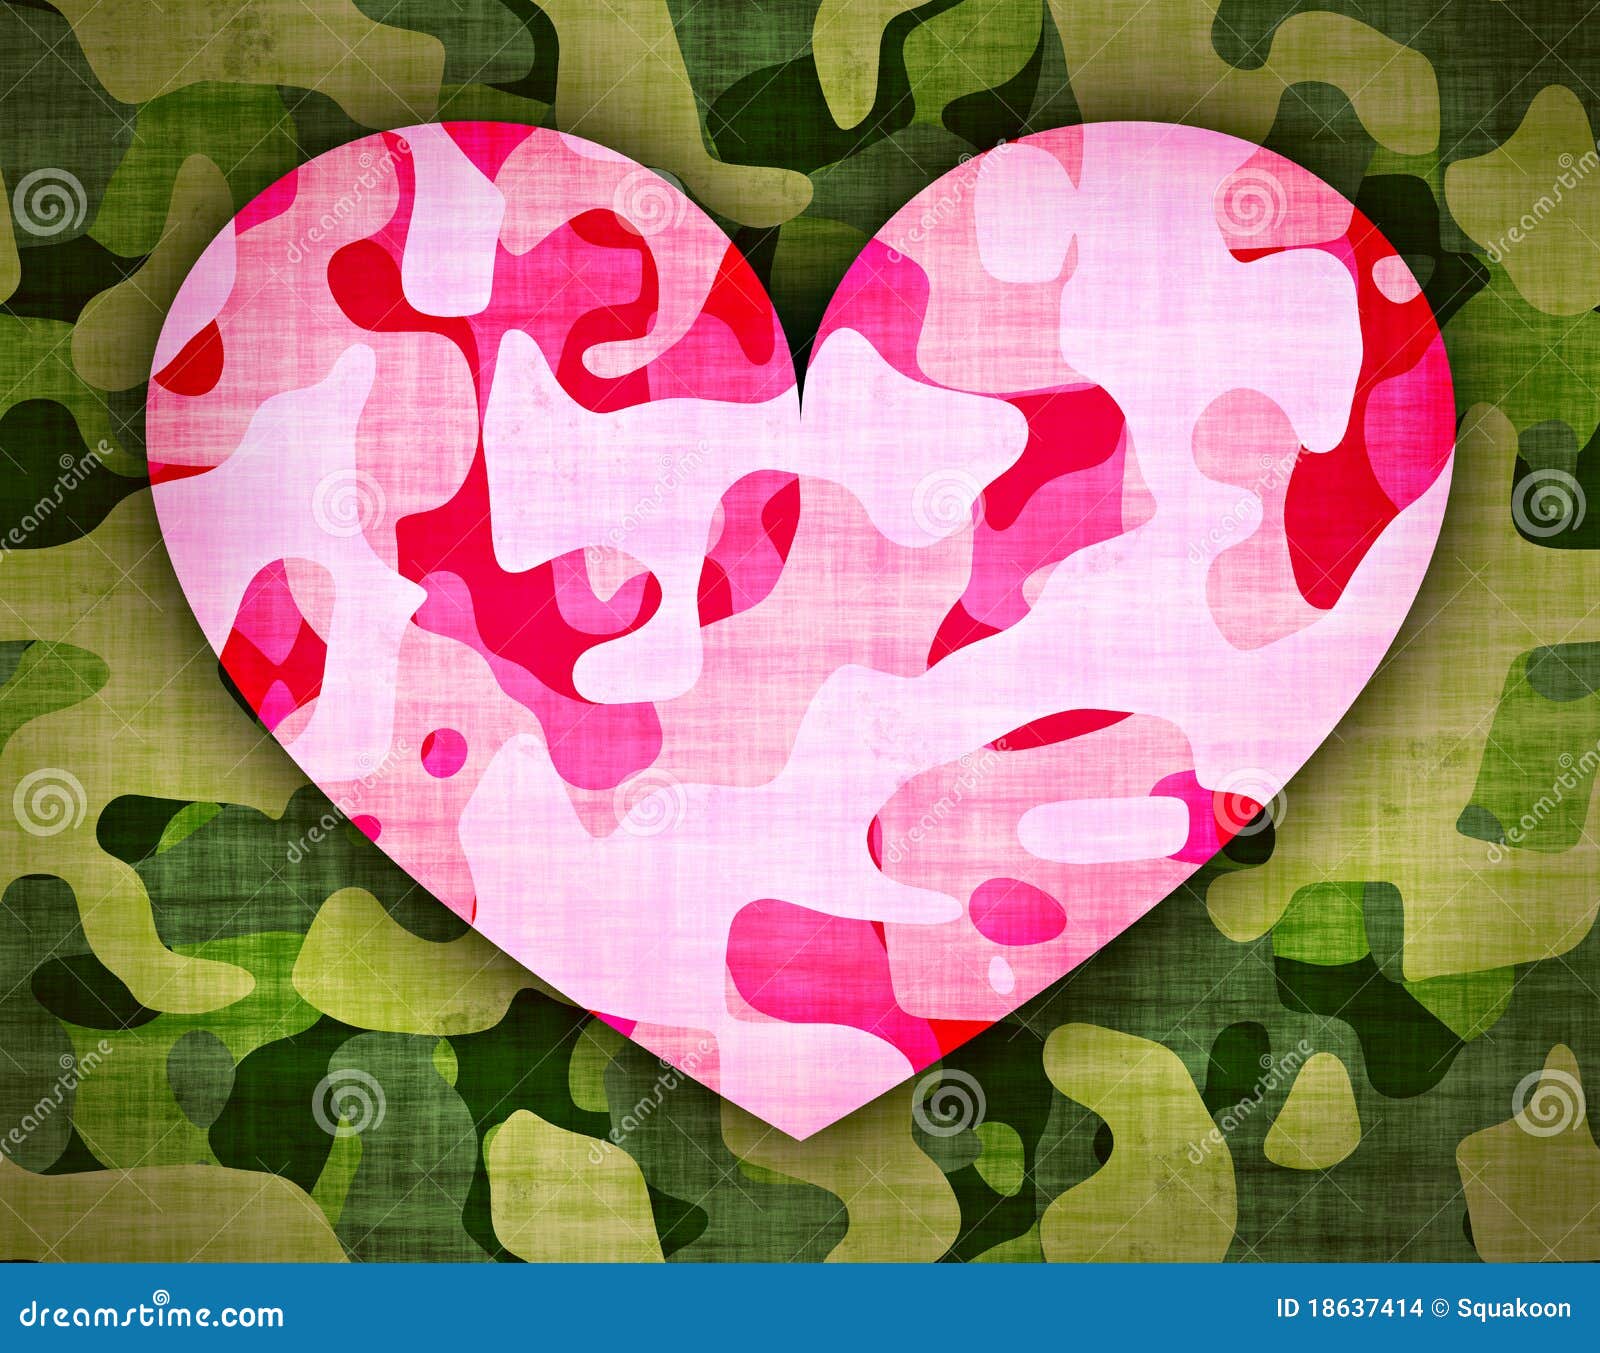 flotador Deshacer Paisaje Camouflage Heart Stock Illustrations – 1,167 Camouflage Heart Stock  Illustrations, Vectors & Clipart - Dreamstime